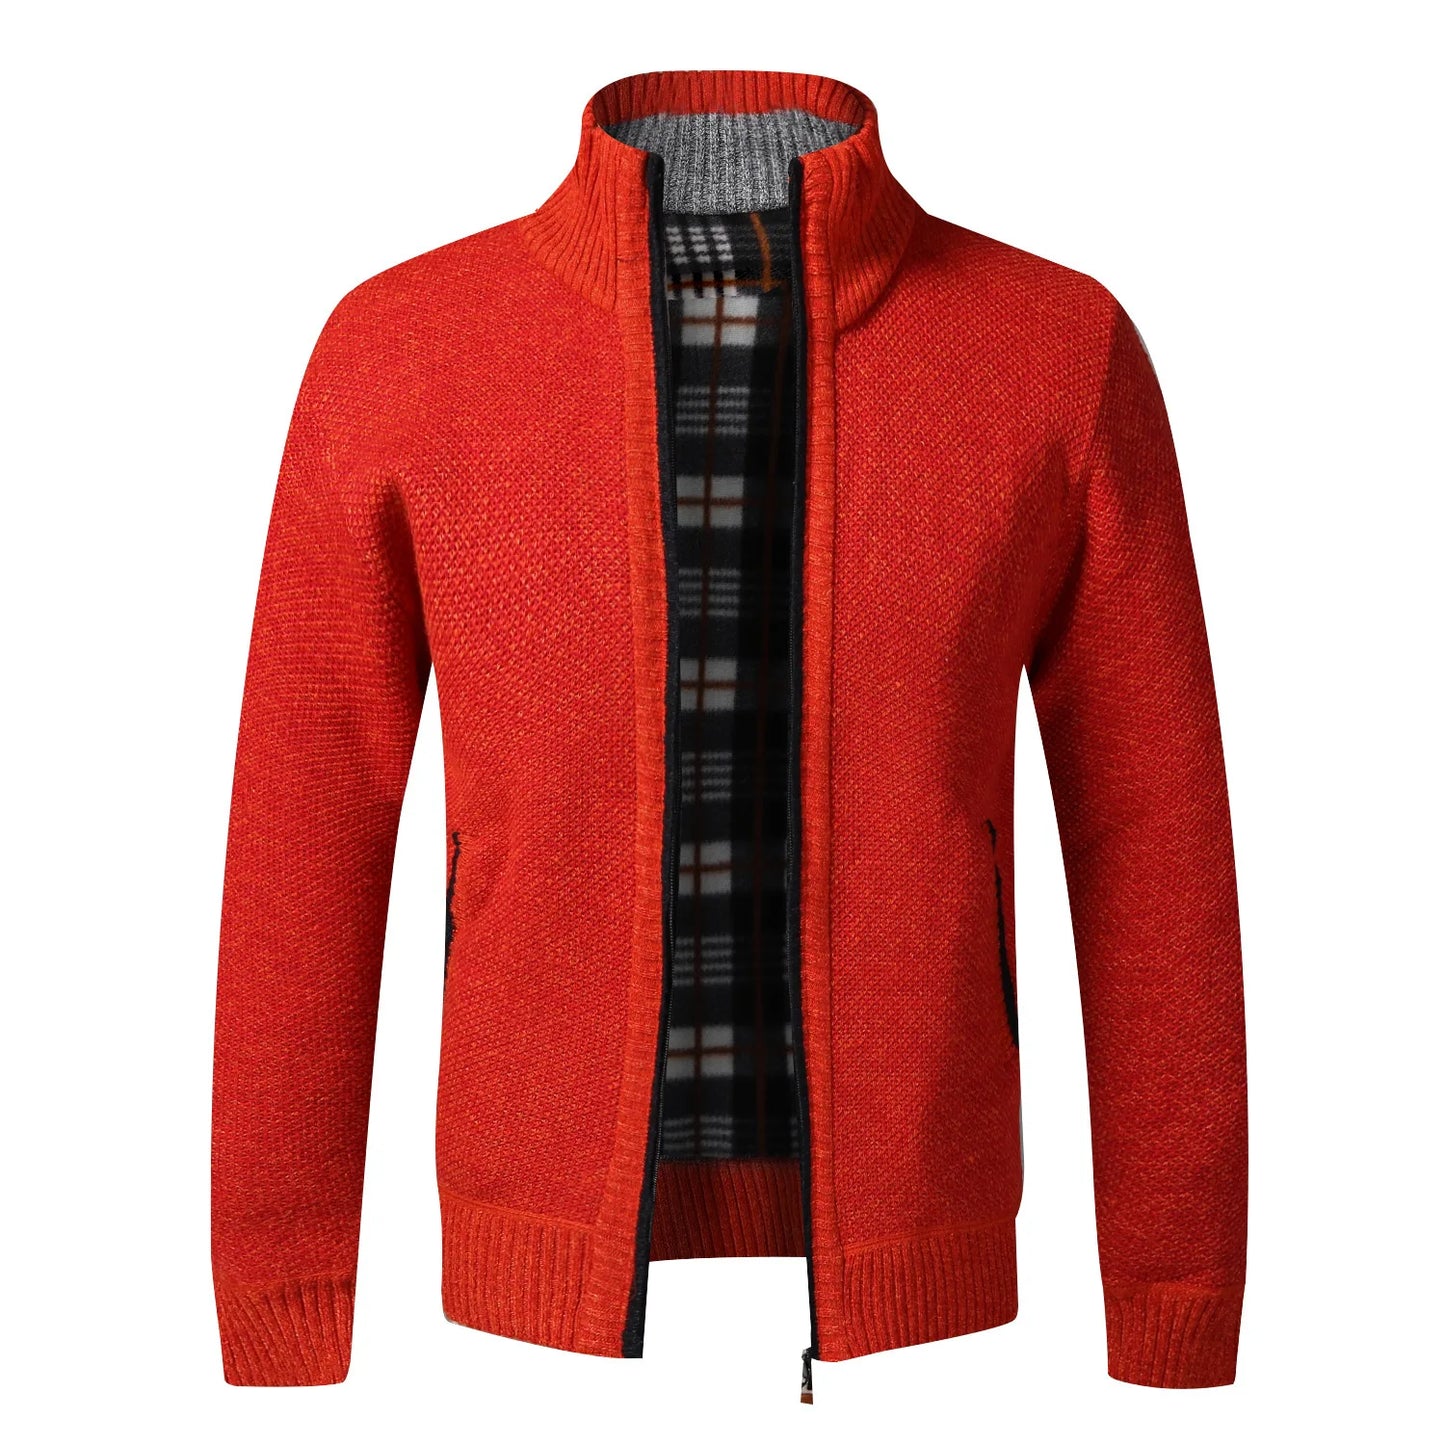 TEEK - Warm Knitted Zipper Sweater Jacket JACKET theteekdotcom orange US XS | Tag M 